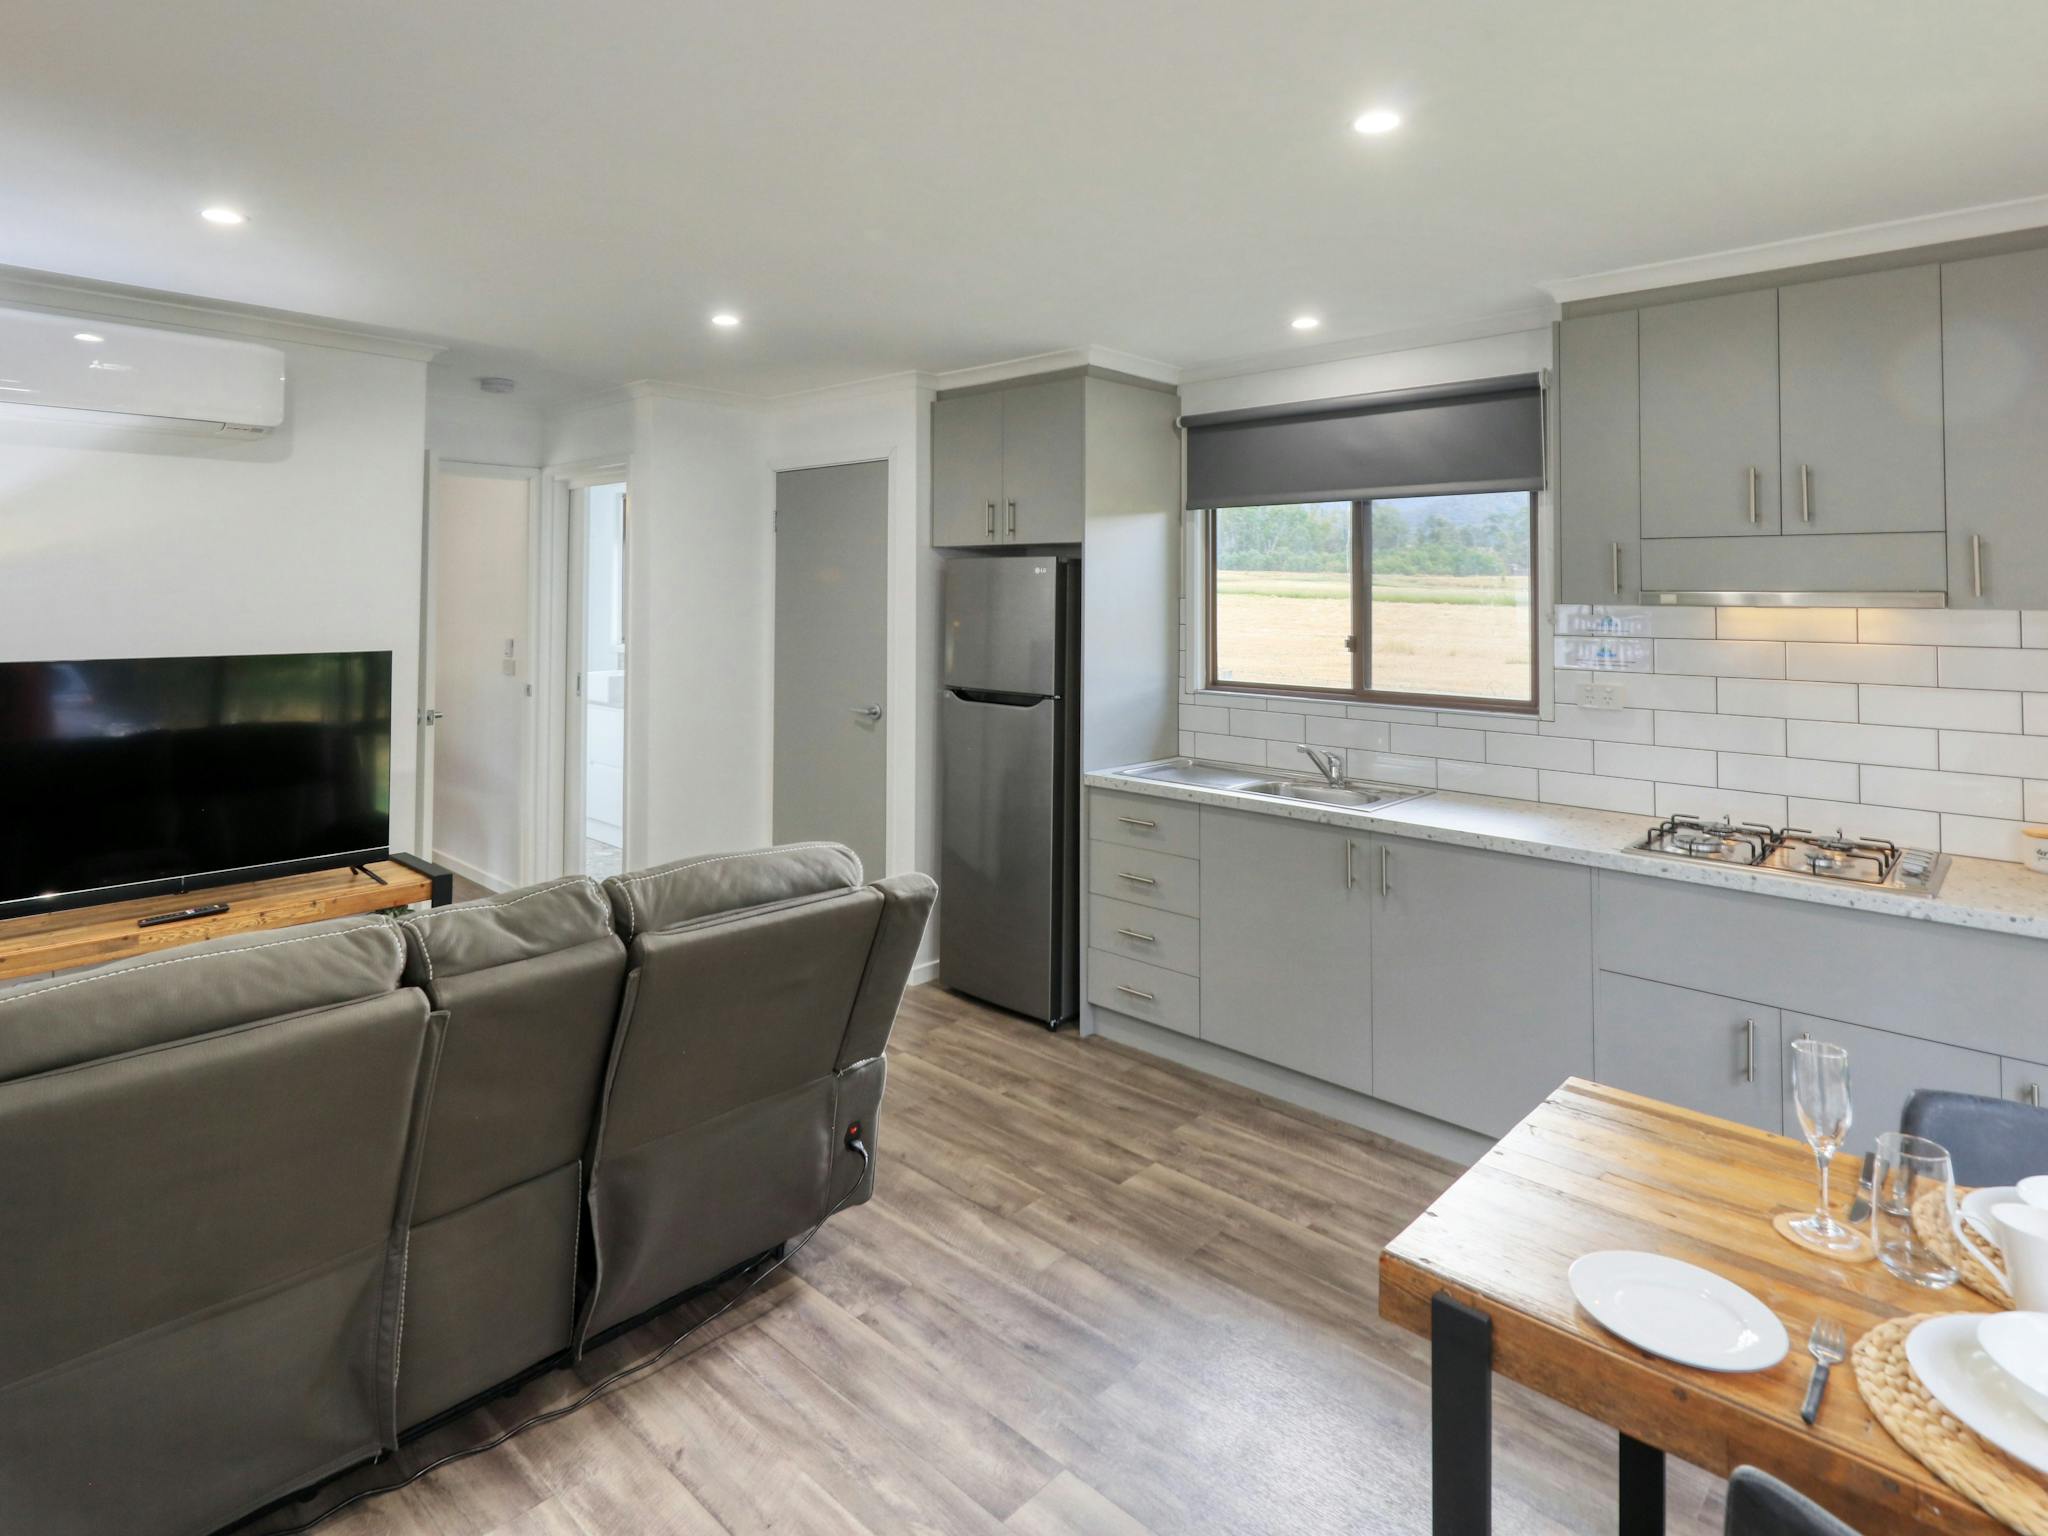 Deluxe Cabin - 1 bedroom - kitchen/dining